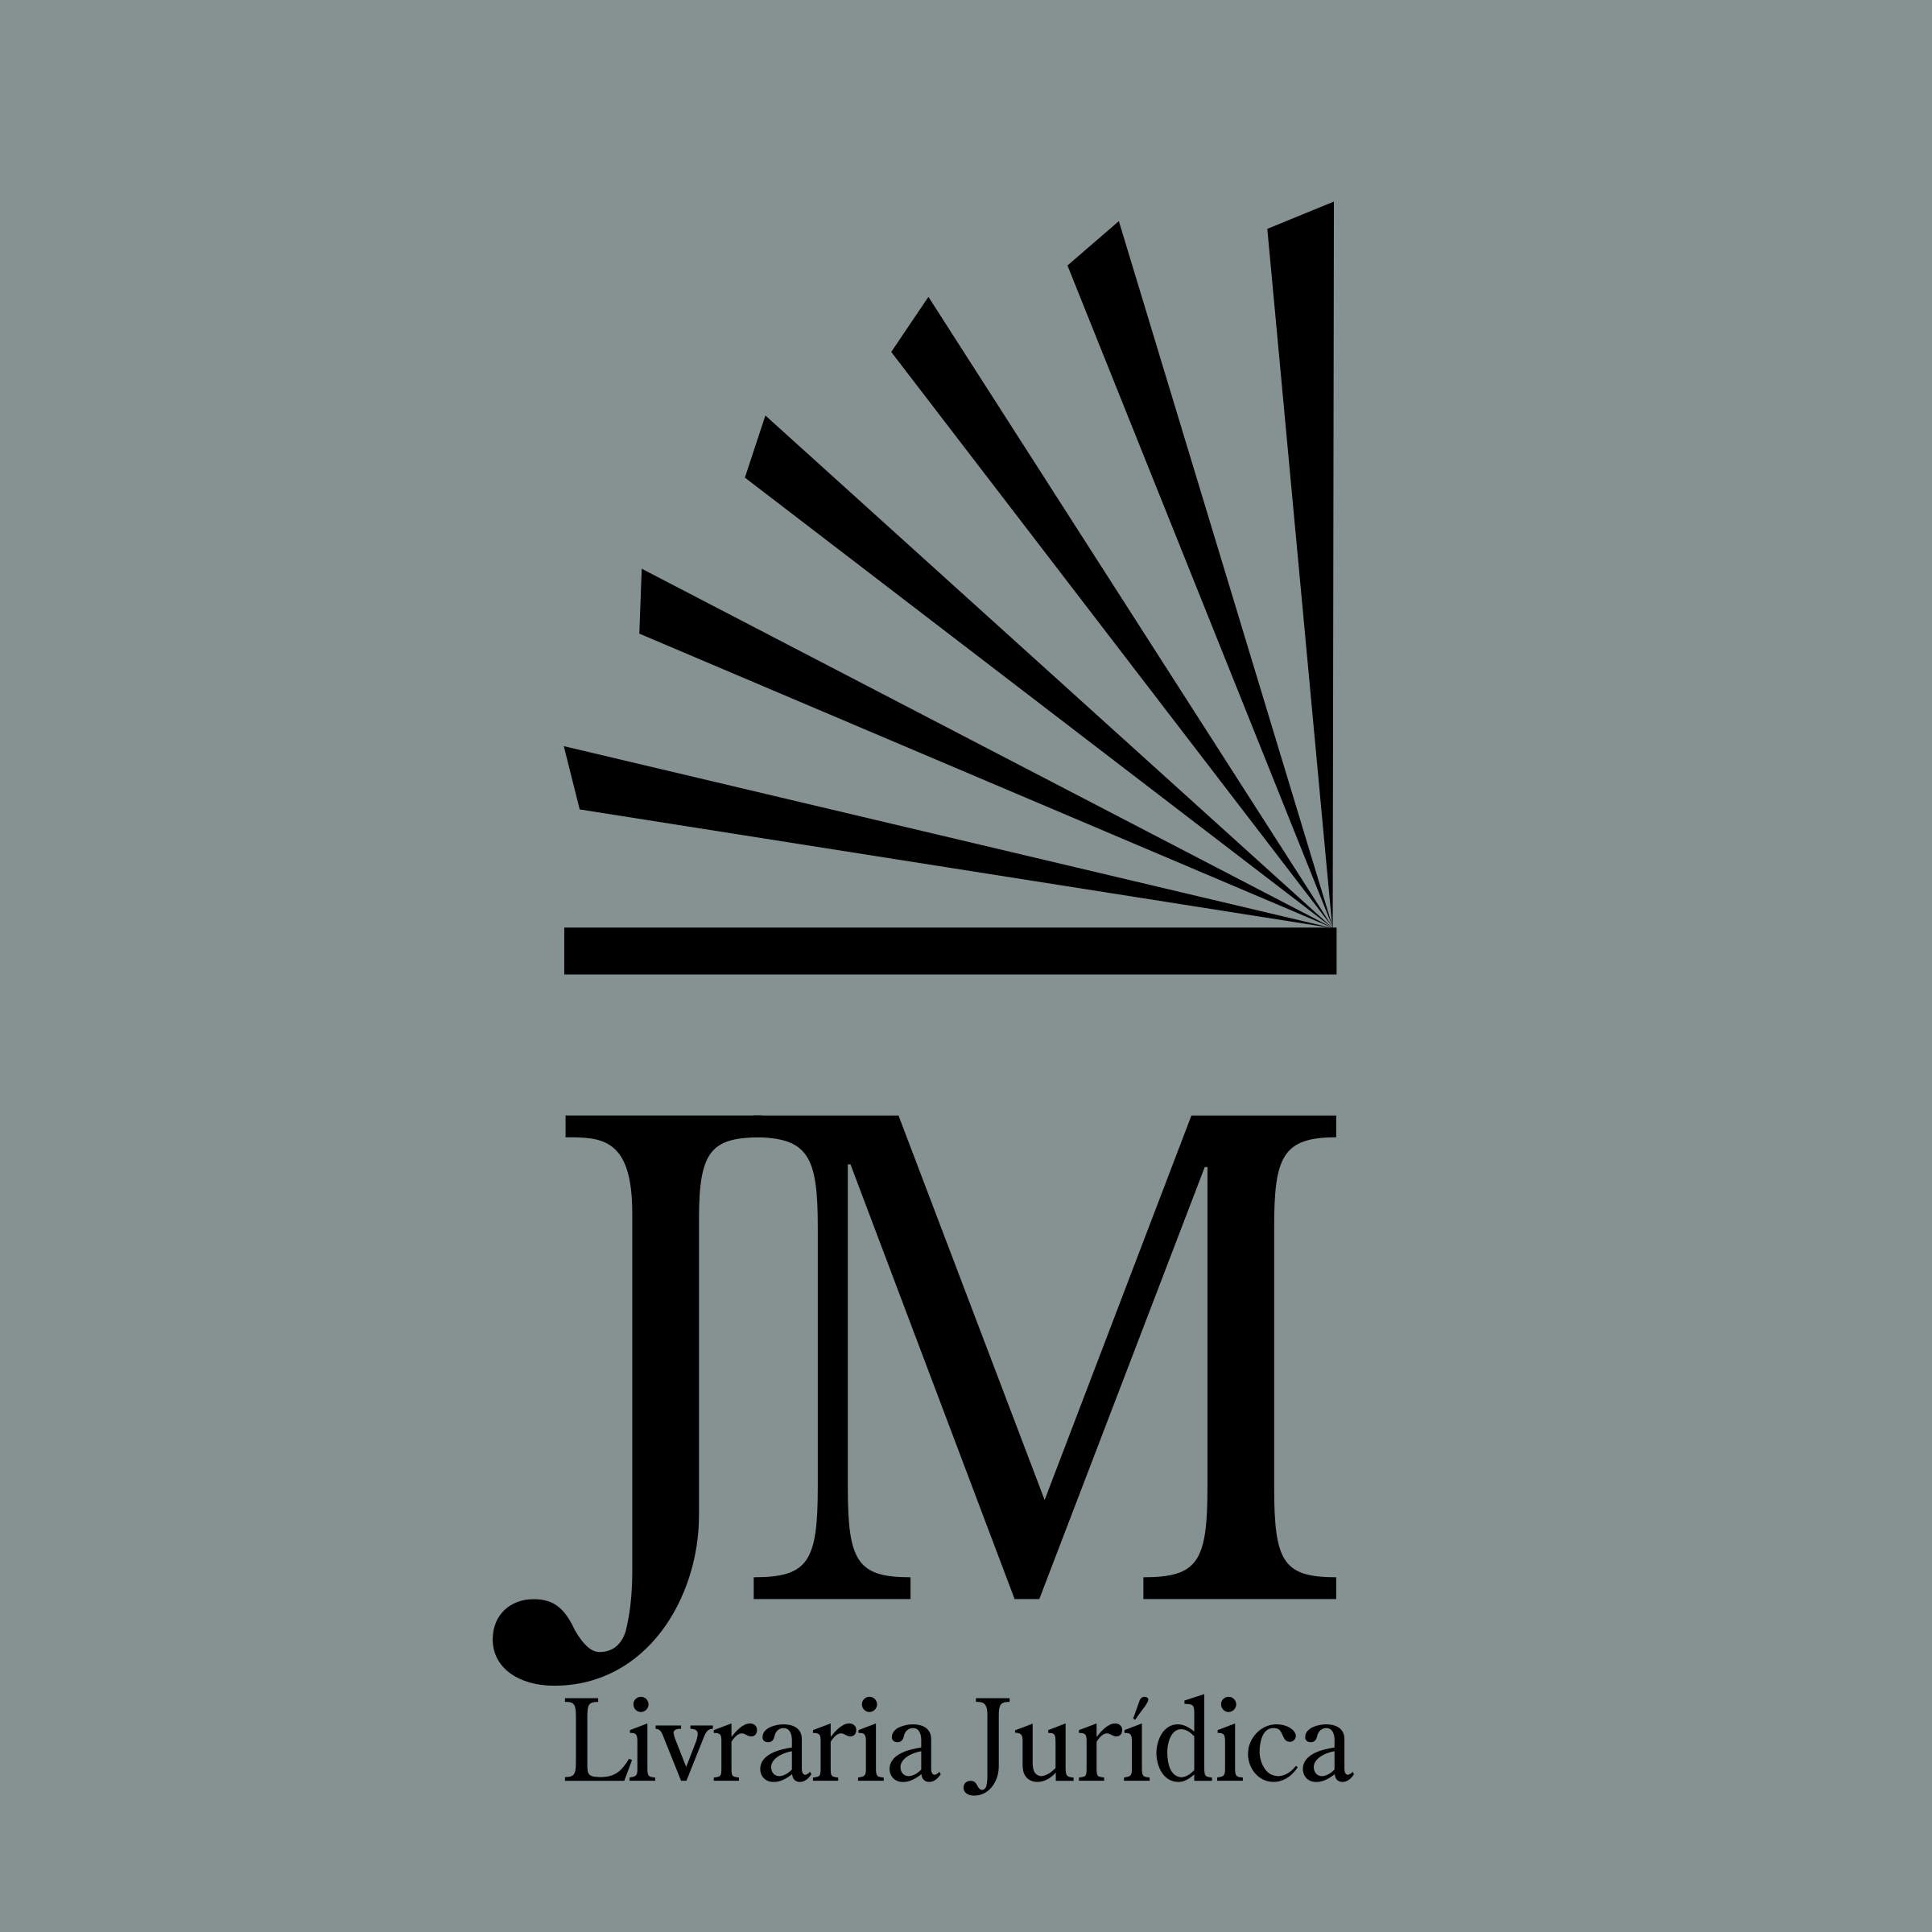 JM Logo - JM Logo PNG Transparent & SVG Vector - Freebie Supply